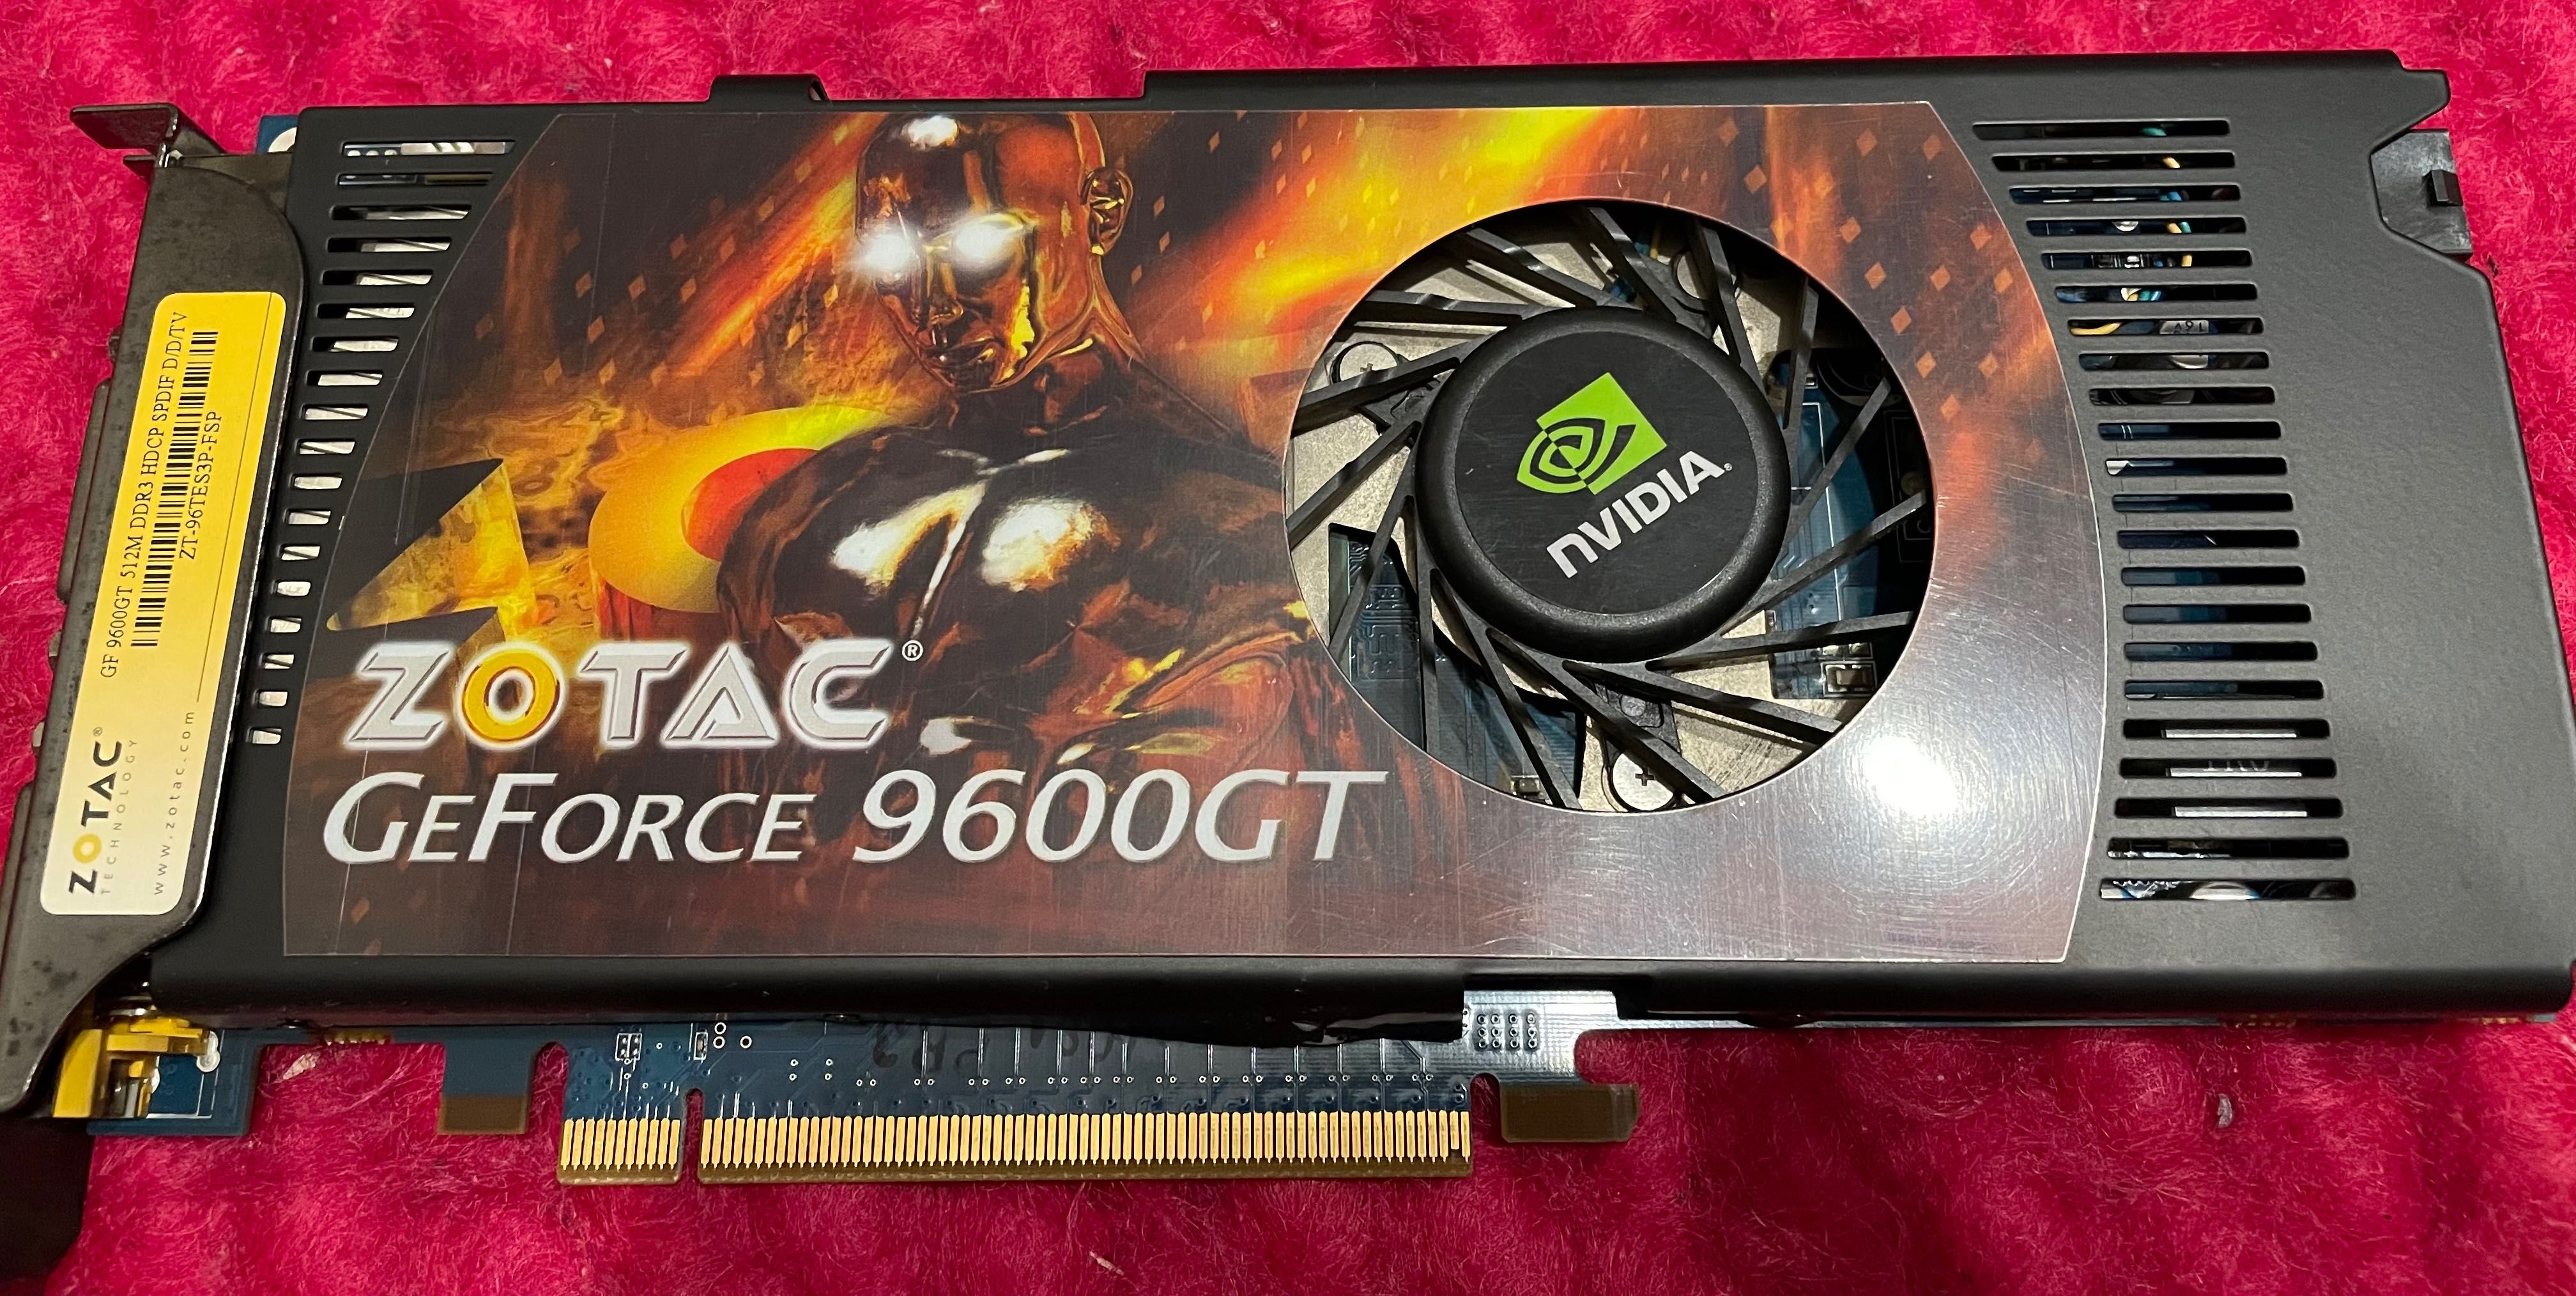 Zotac GeForce 9600GT